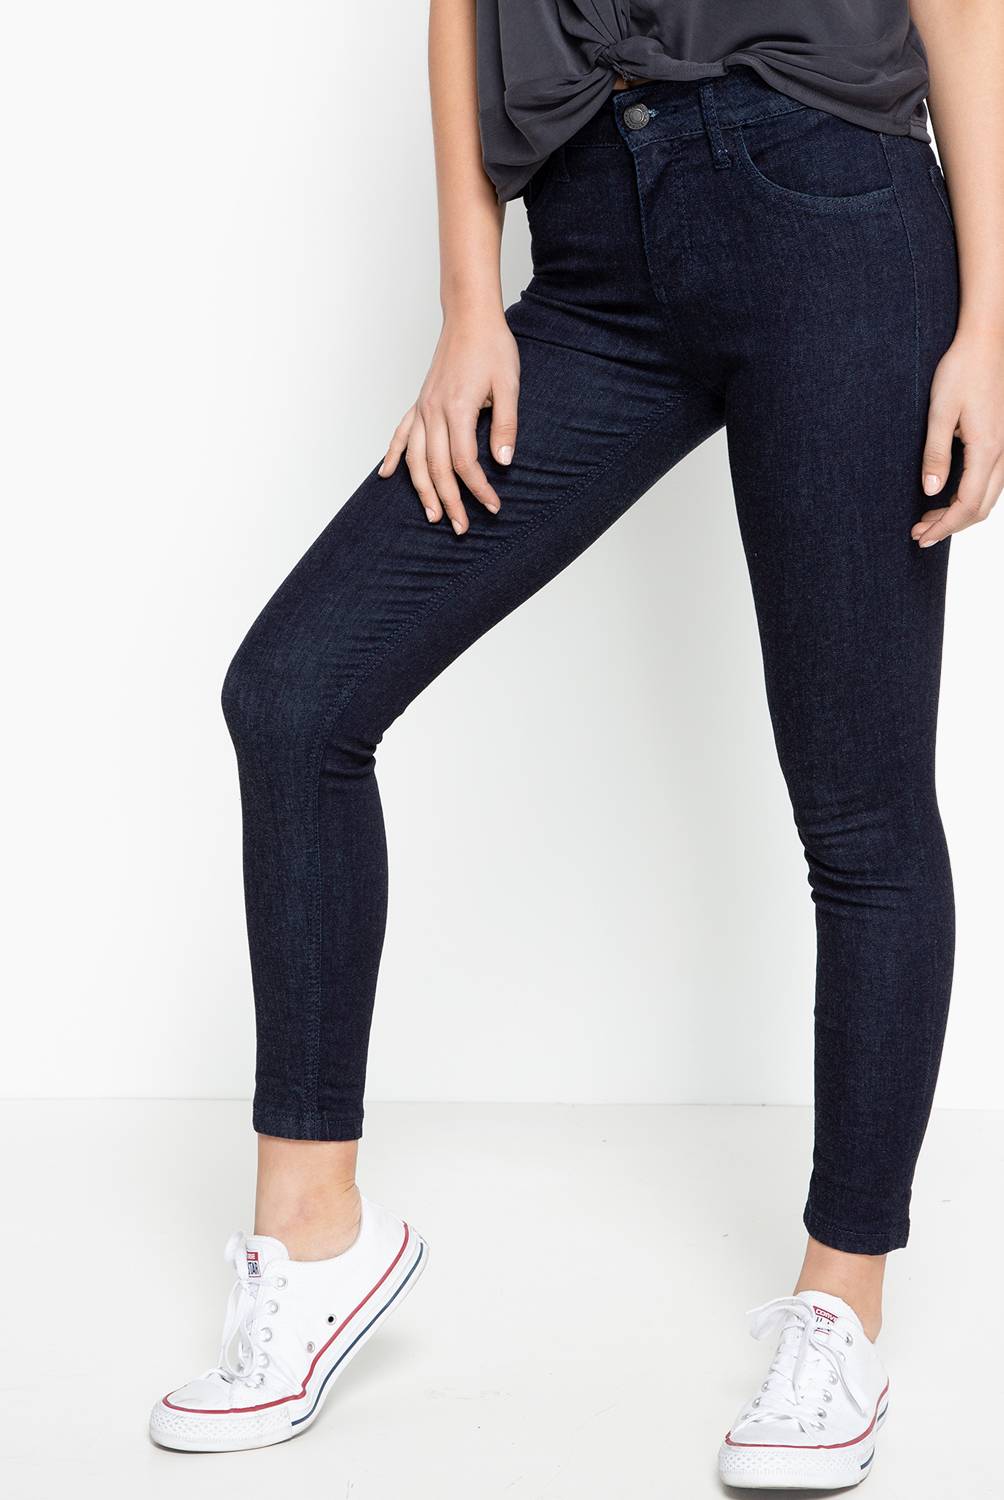 Americanino - Jeans de Algodón Skinny Mujer